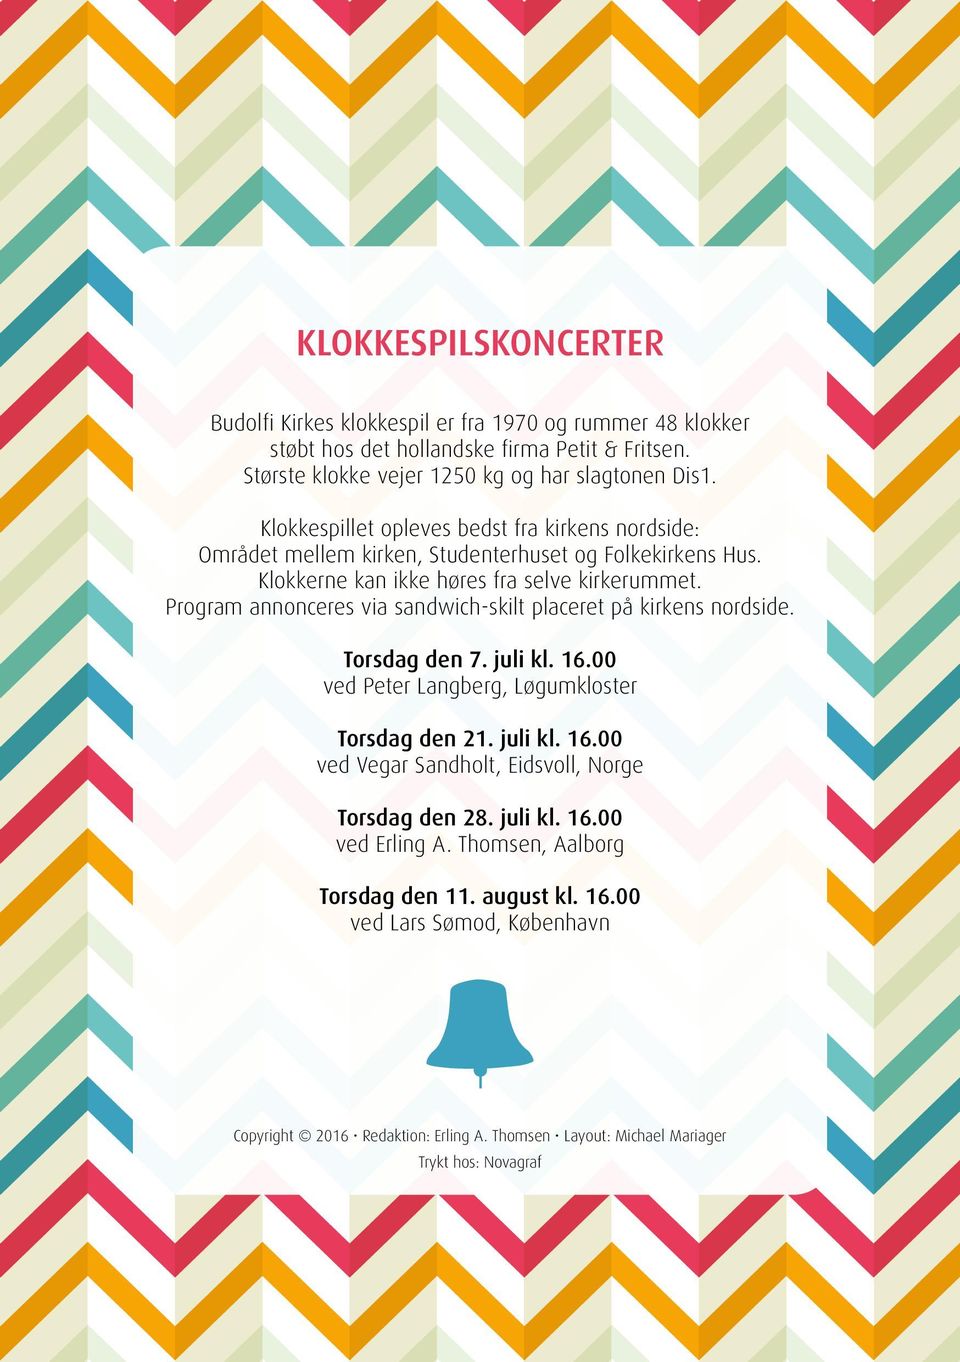 Program annonceres via sandwich-skilt placeret på kirkens nordside. Torsdag den 7. juli kl. 16.00 ved Peter Langberg, Løgumkloster Torsdag den 21. juli kl. 16.00 ved Vegar Sandholt, Eidsvoll, Norge Torsdag den 28.